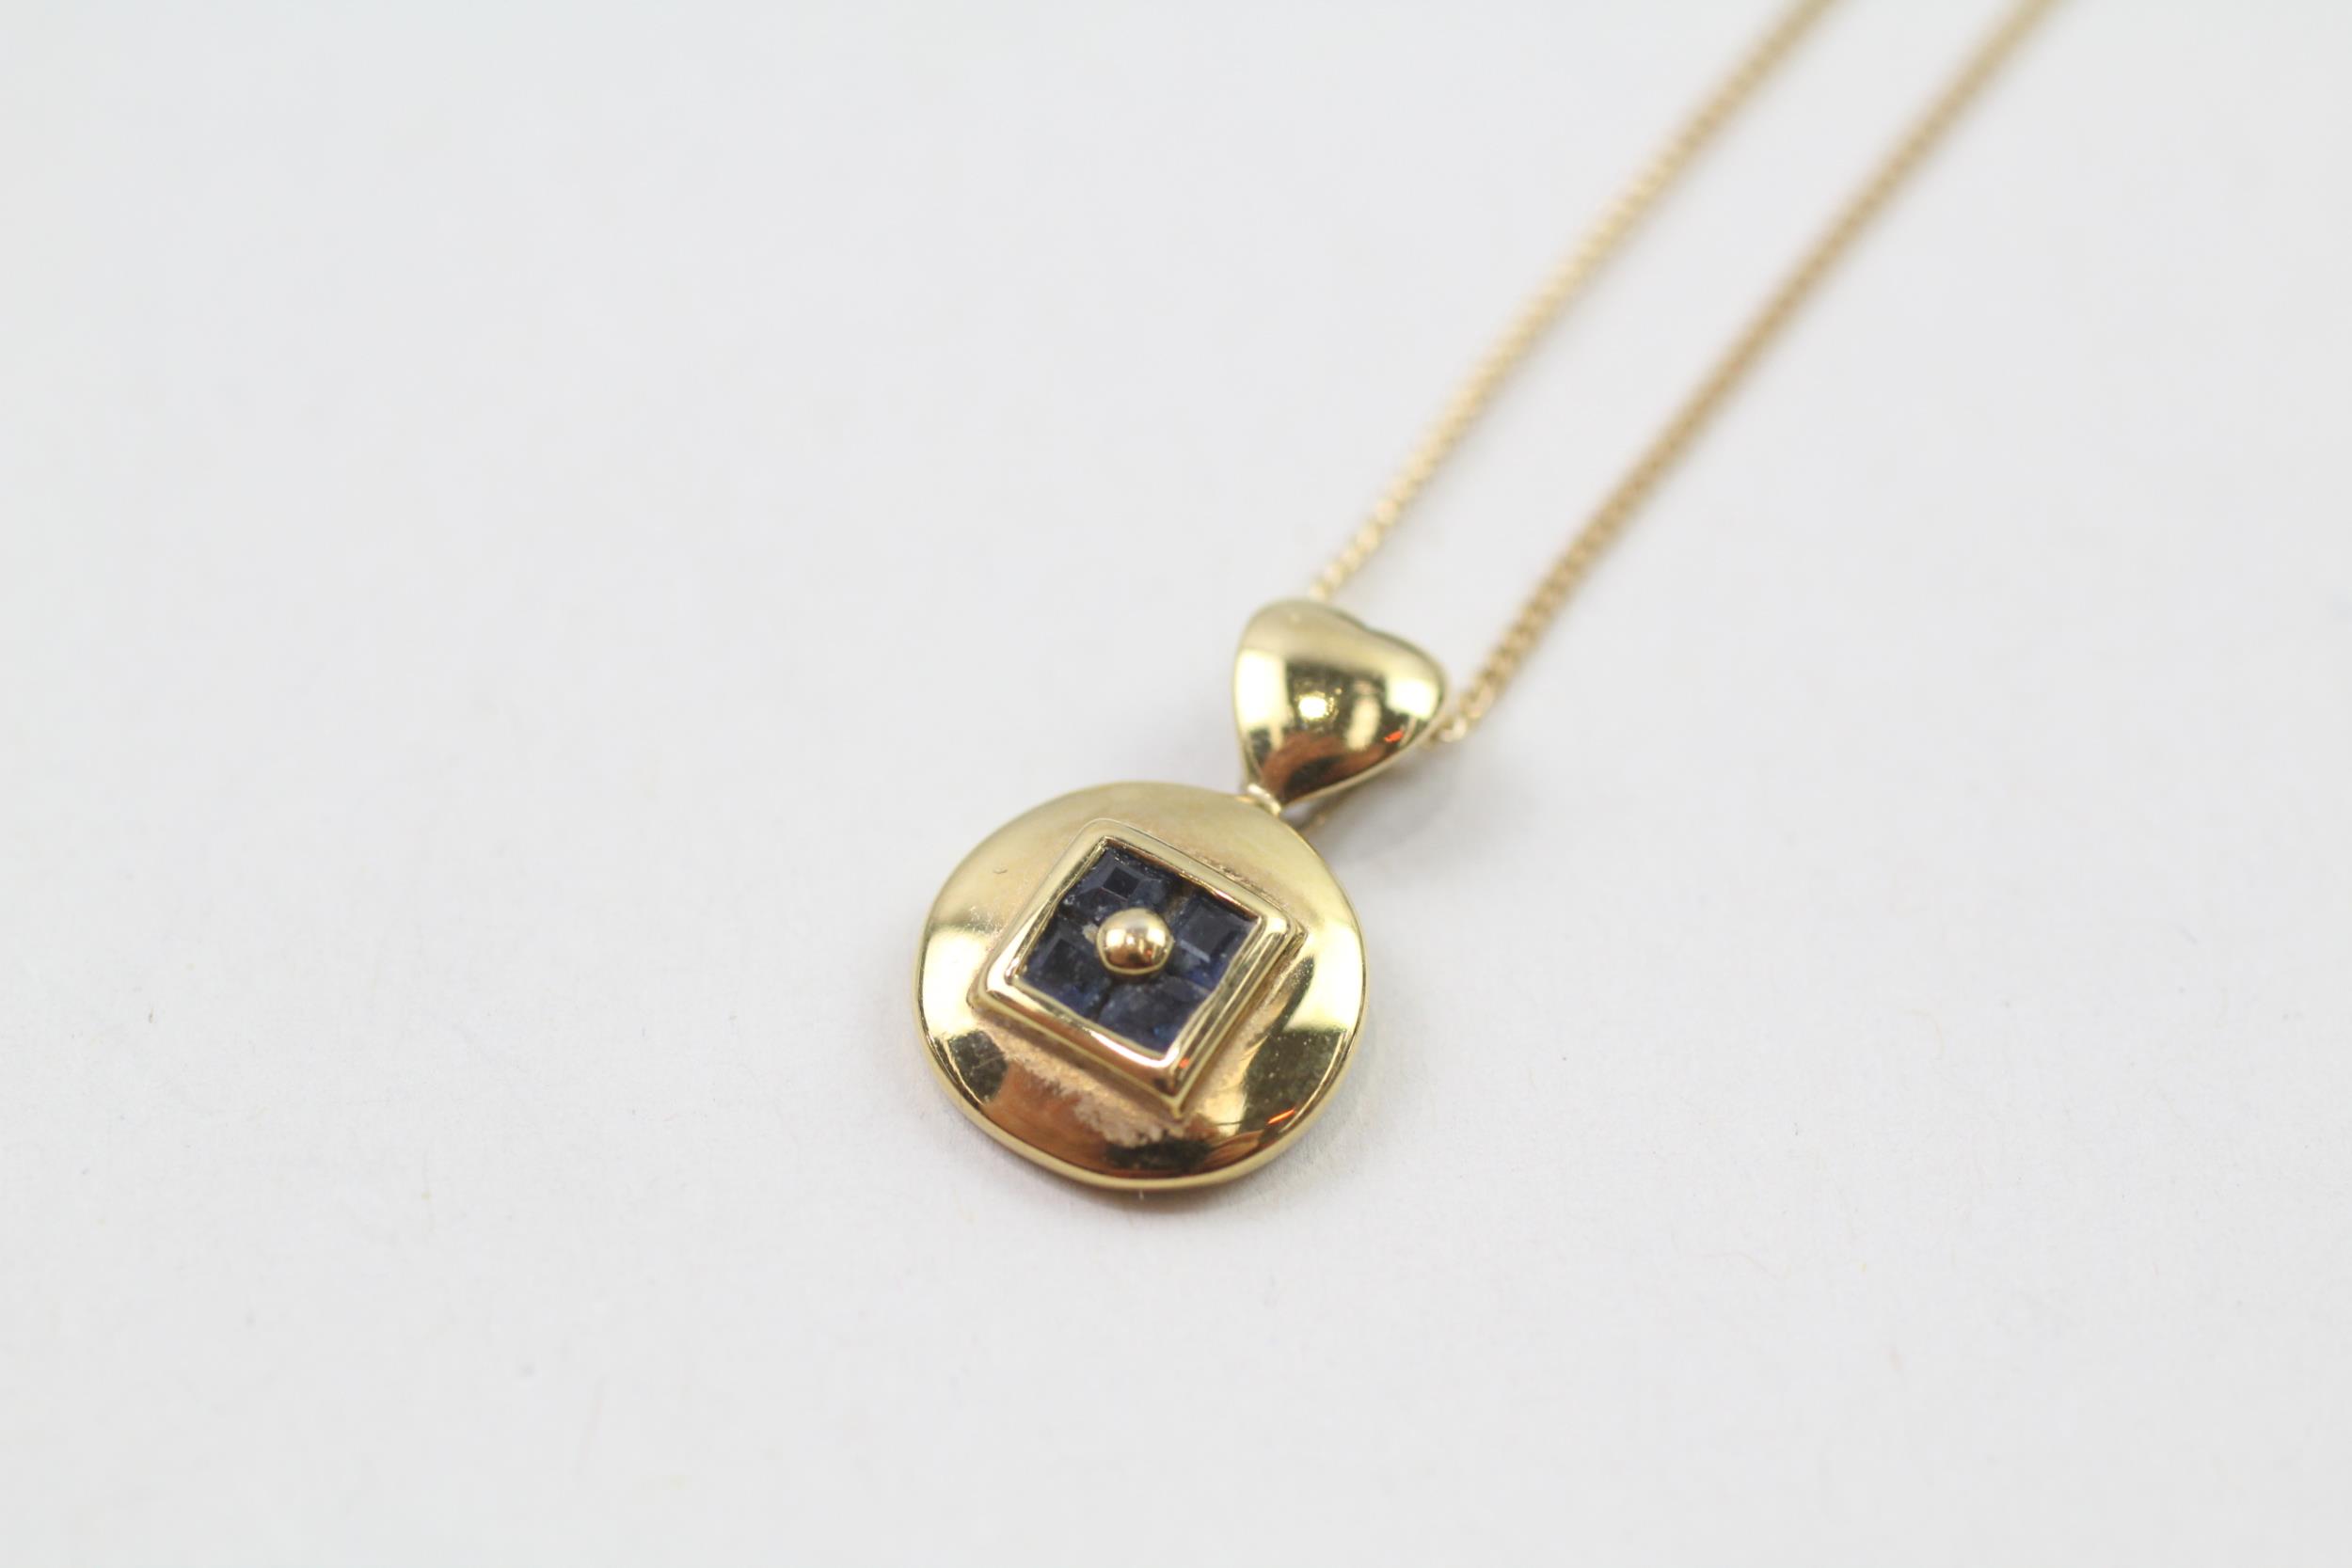 9ct gold square cut sapphire pendant necklace (1.5g)